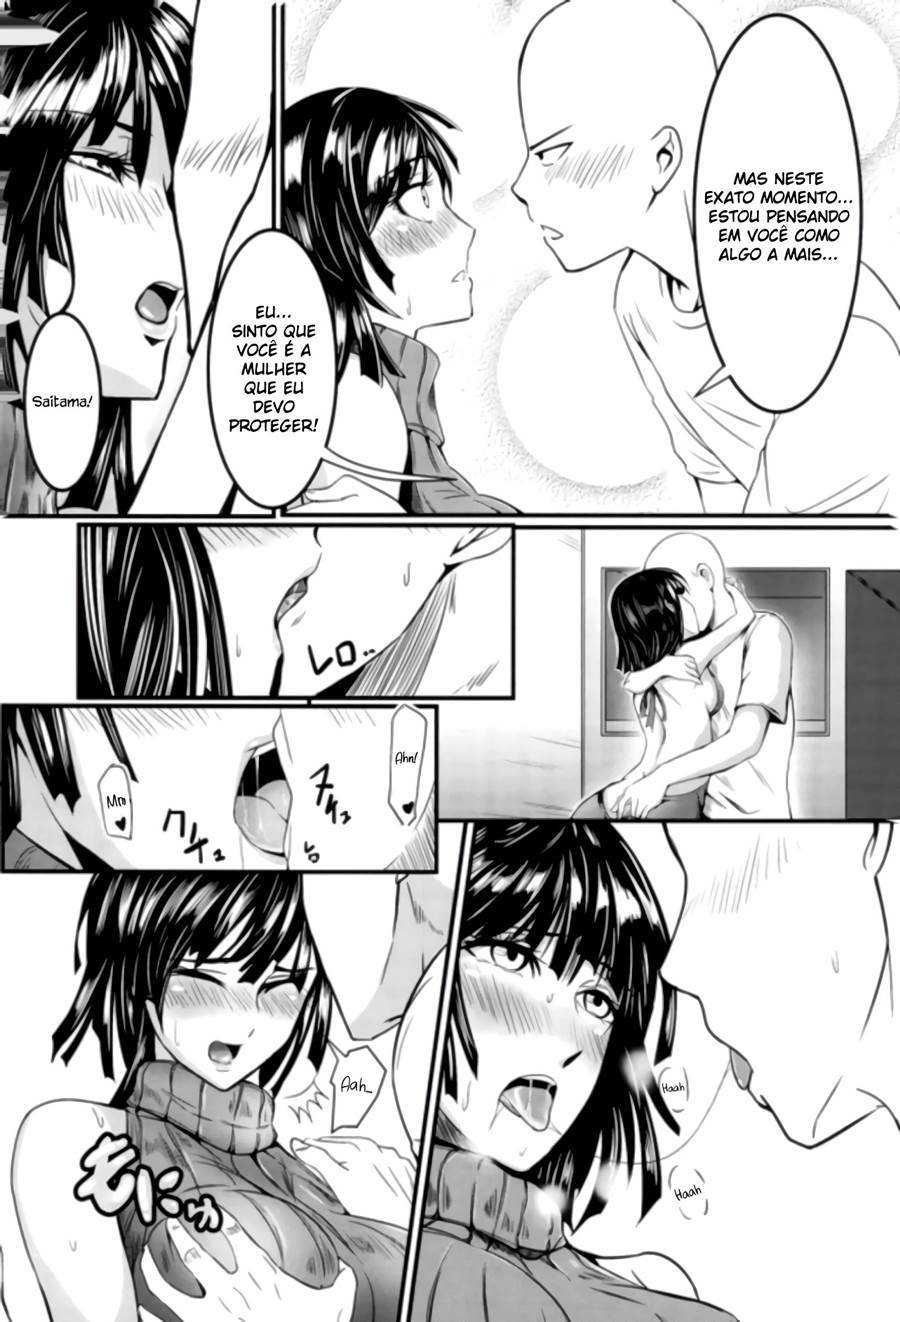 Saitama penetra virgindade de fubuki (7)